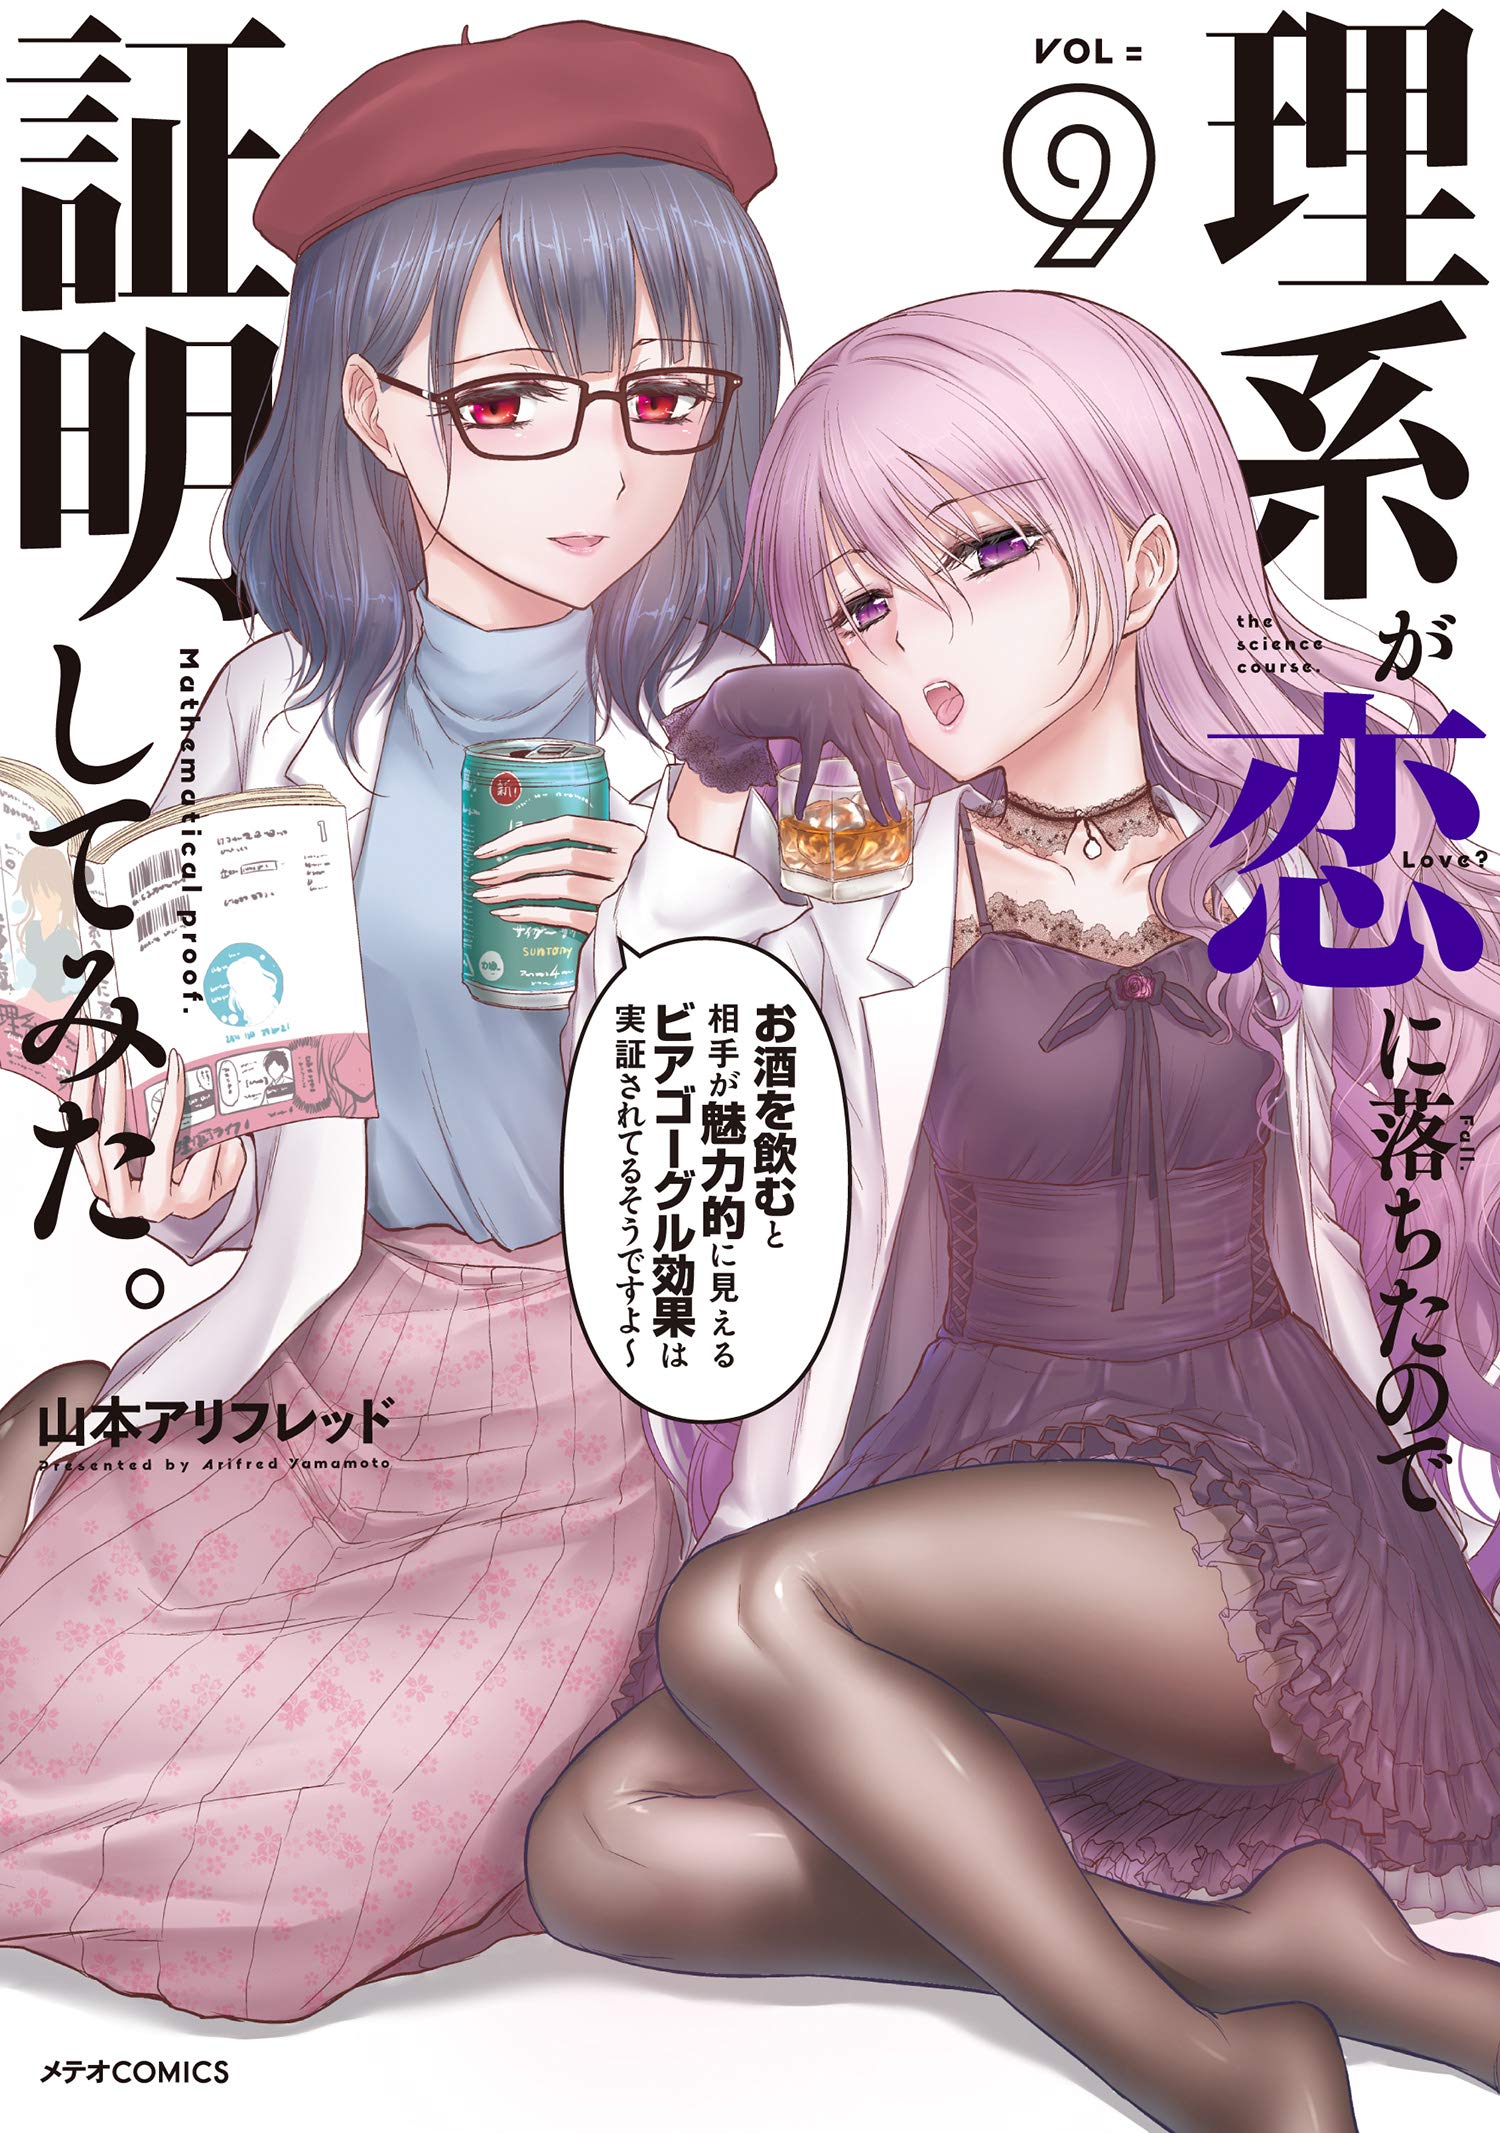 Rikei ga Koi ni Ochita no de Shoumei shitemita. - Baka-Updates Manga